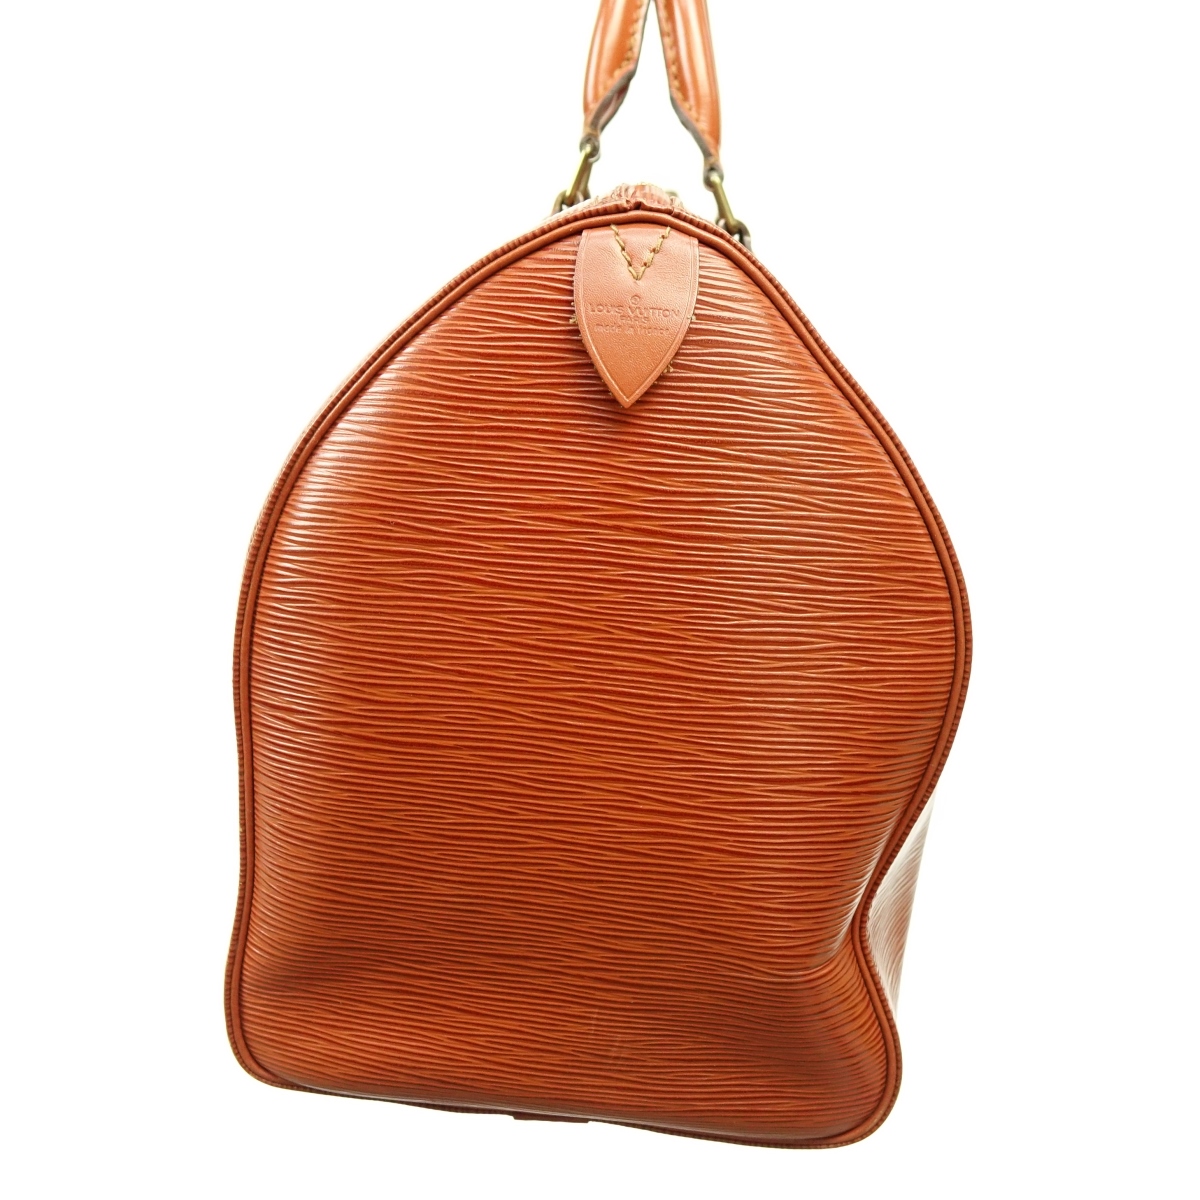 Louis Vuitton Tan Epi Leather Speedy 40 Bag